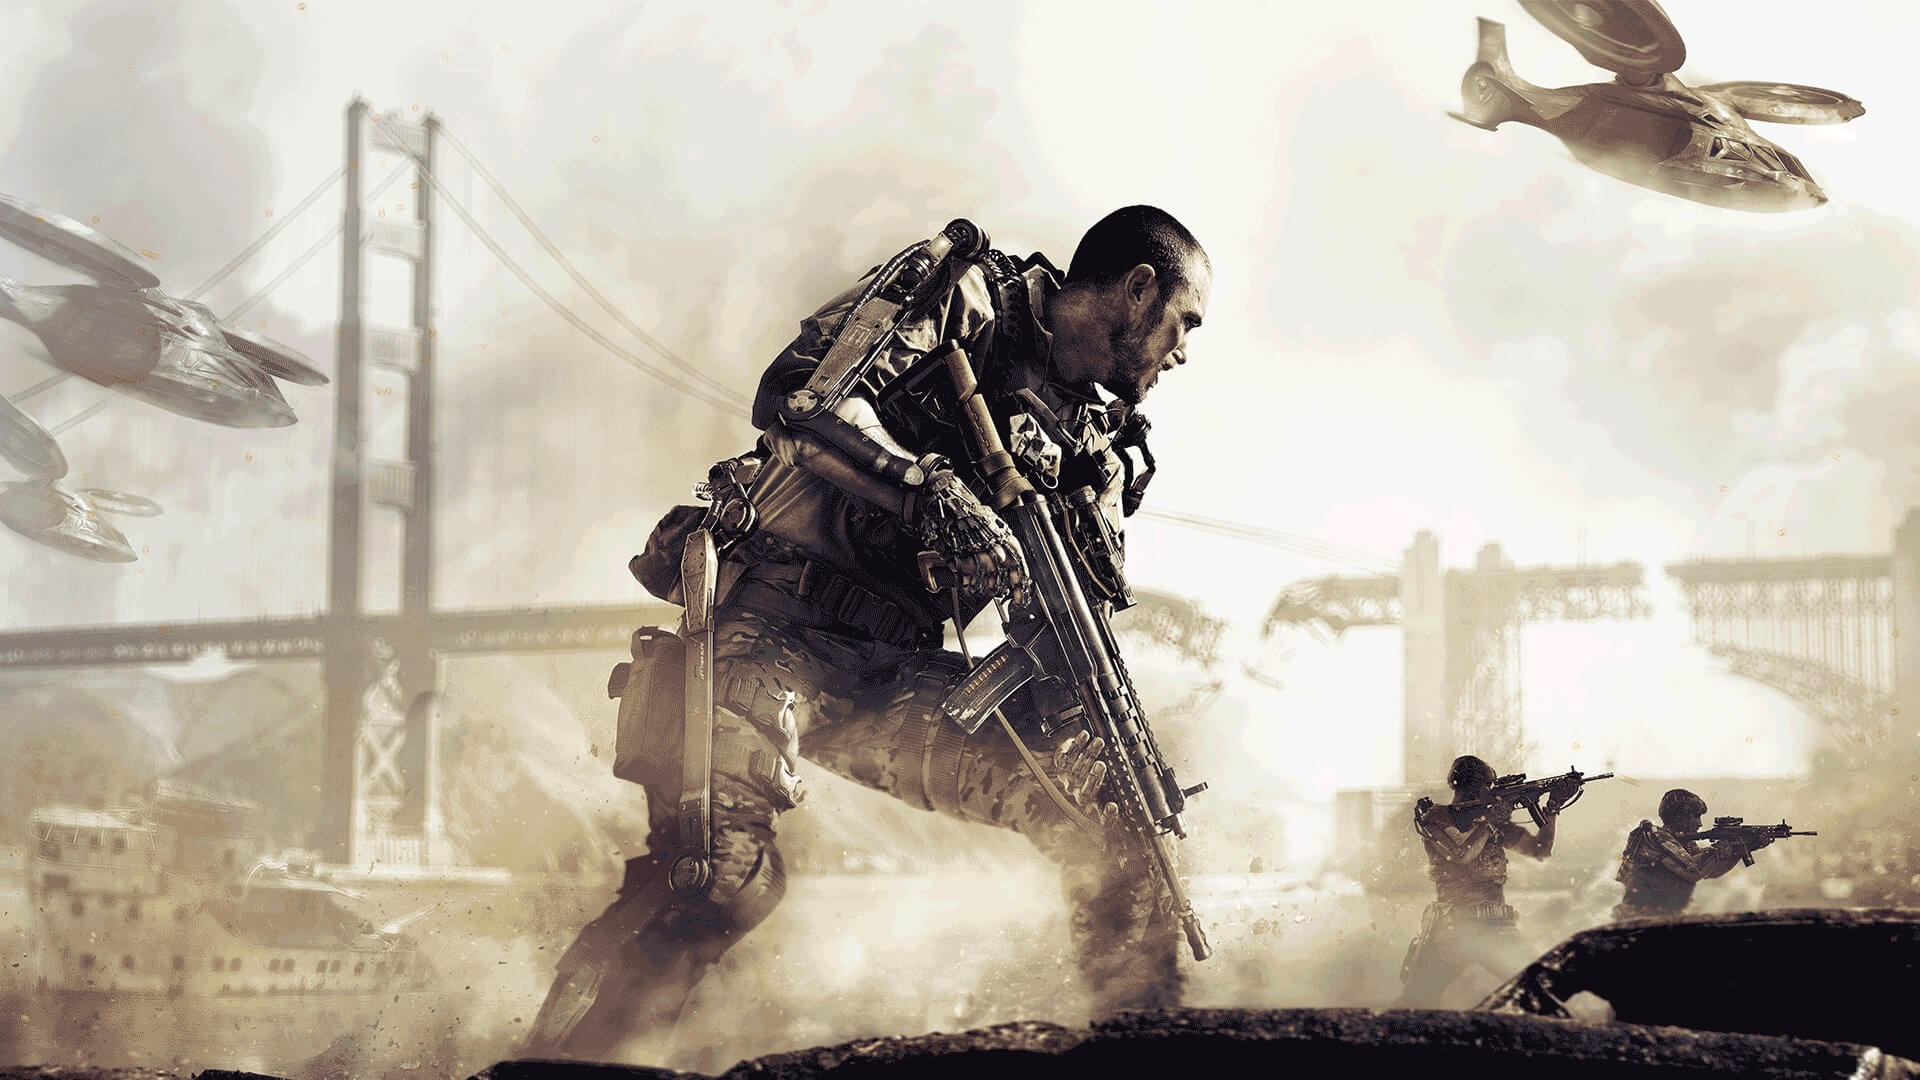 Activision promete contenido premium de Call of Duty, pero no aclaran si lanzarán un nuevo juego en 2023